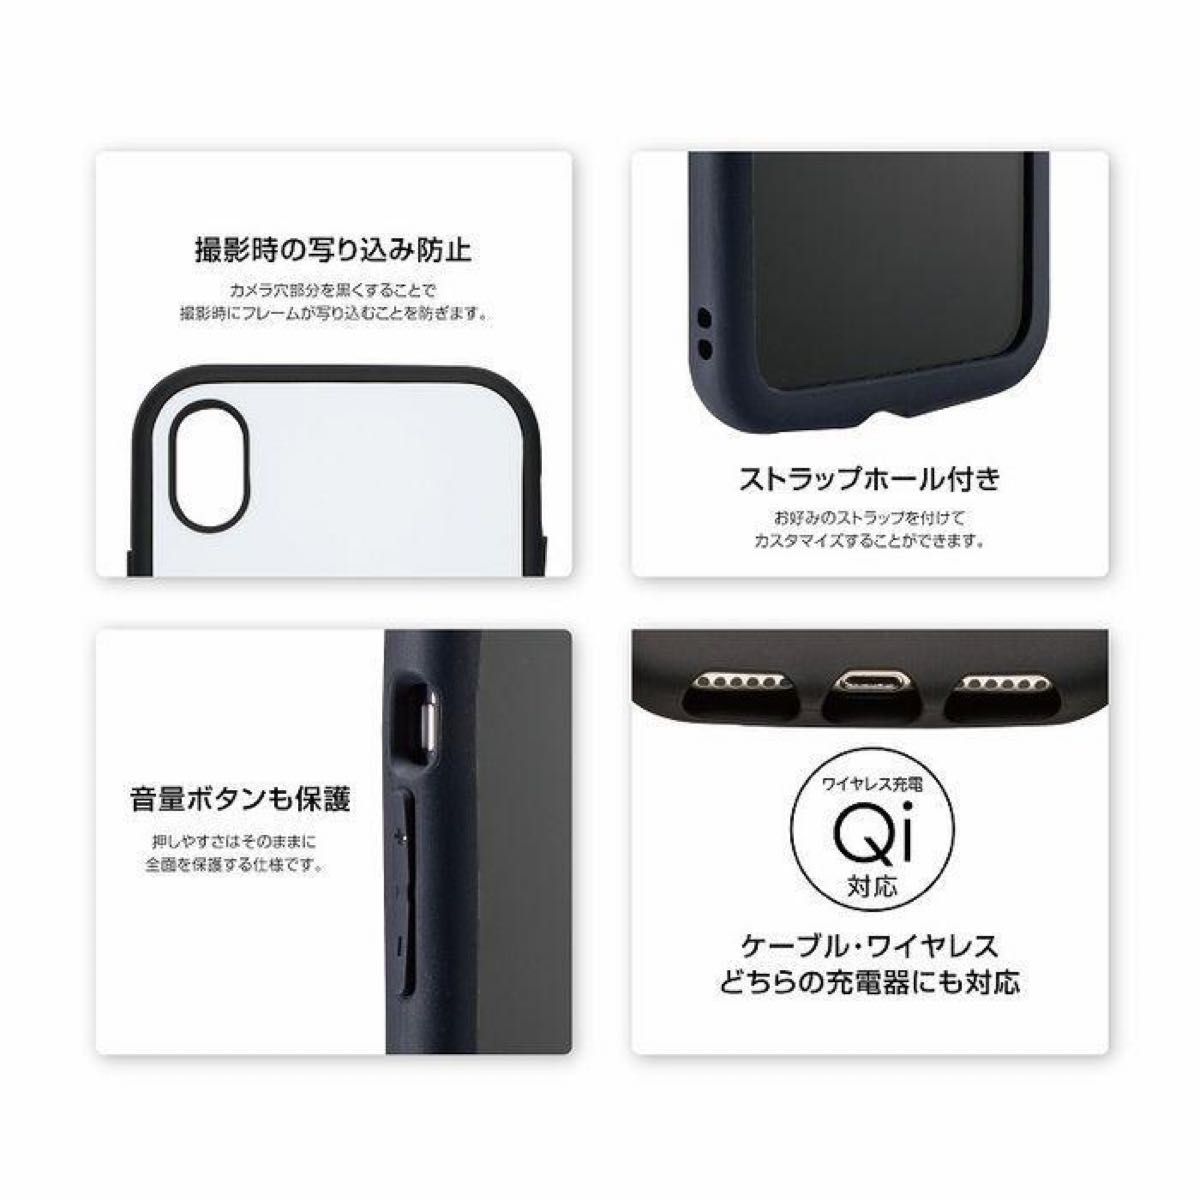 【週末限定価格】iphone12mini ケース カバー